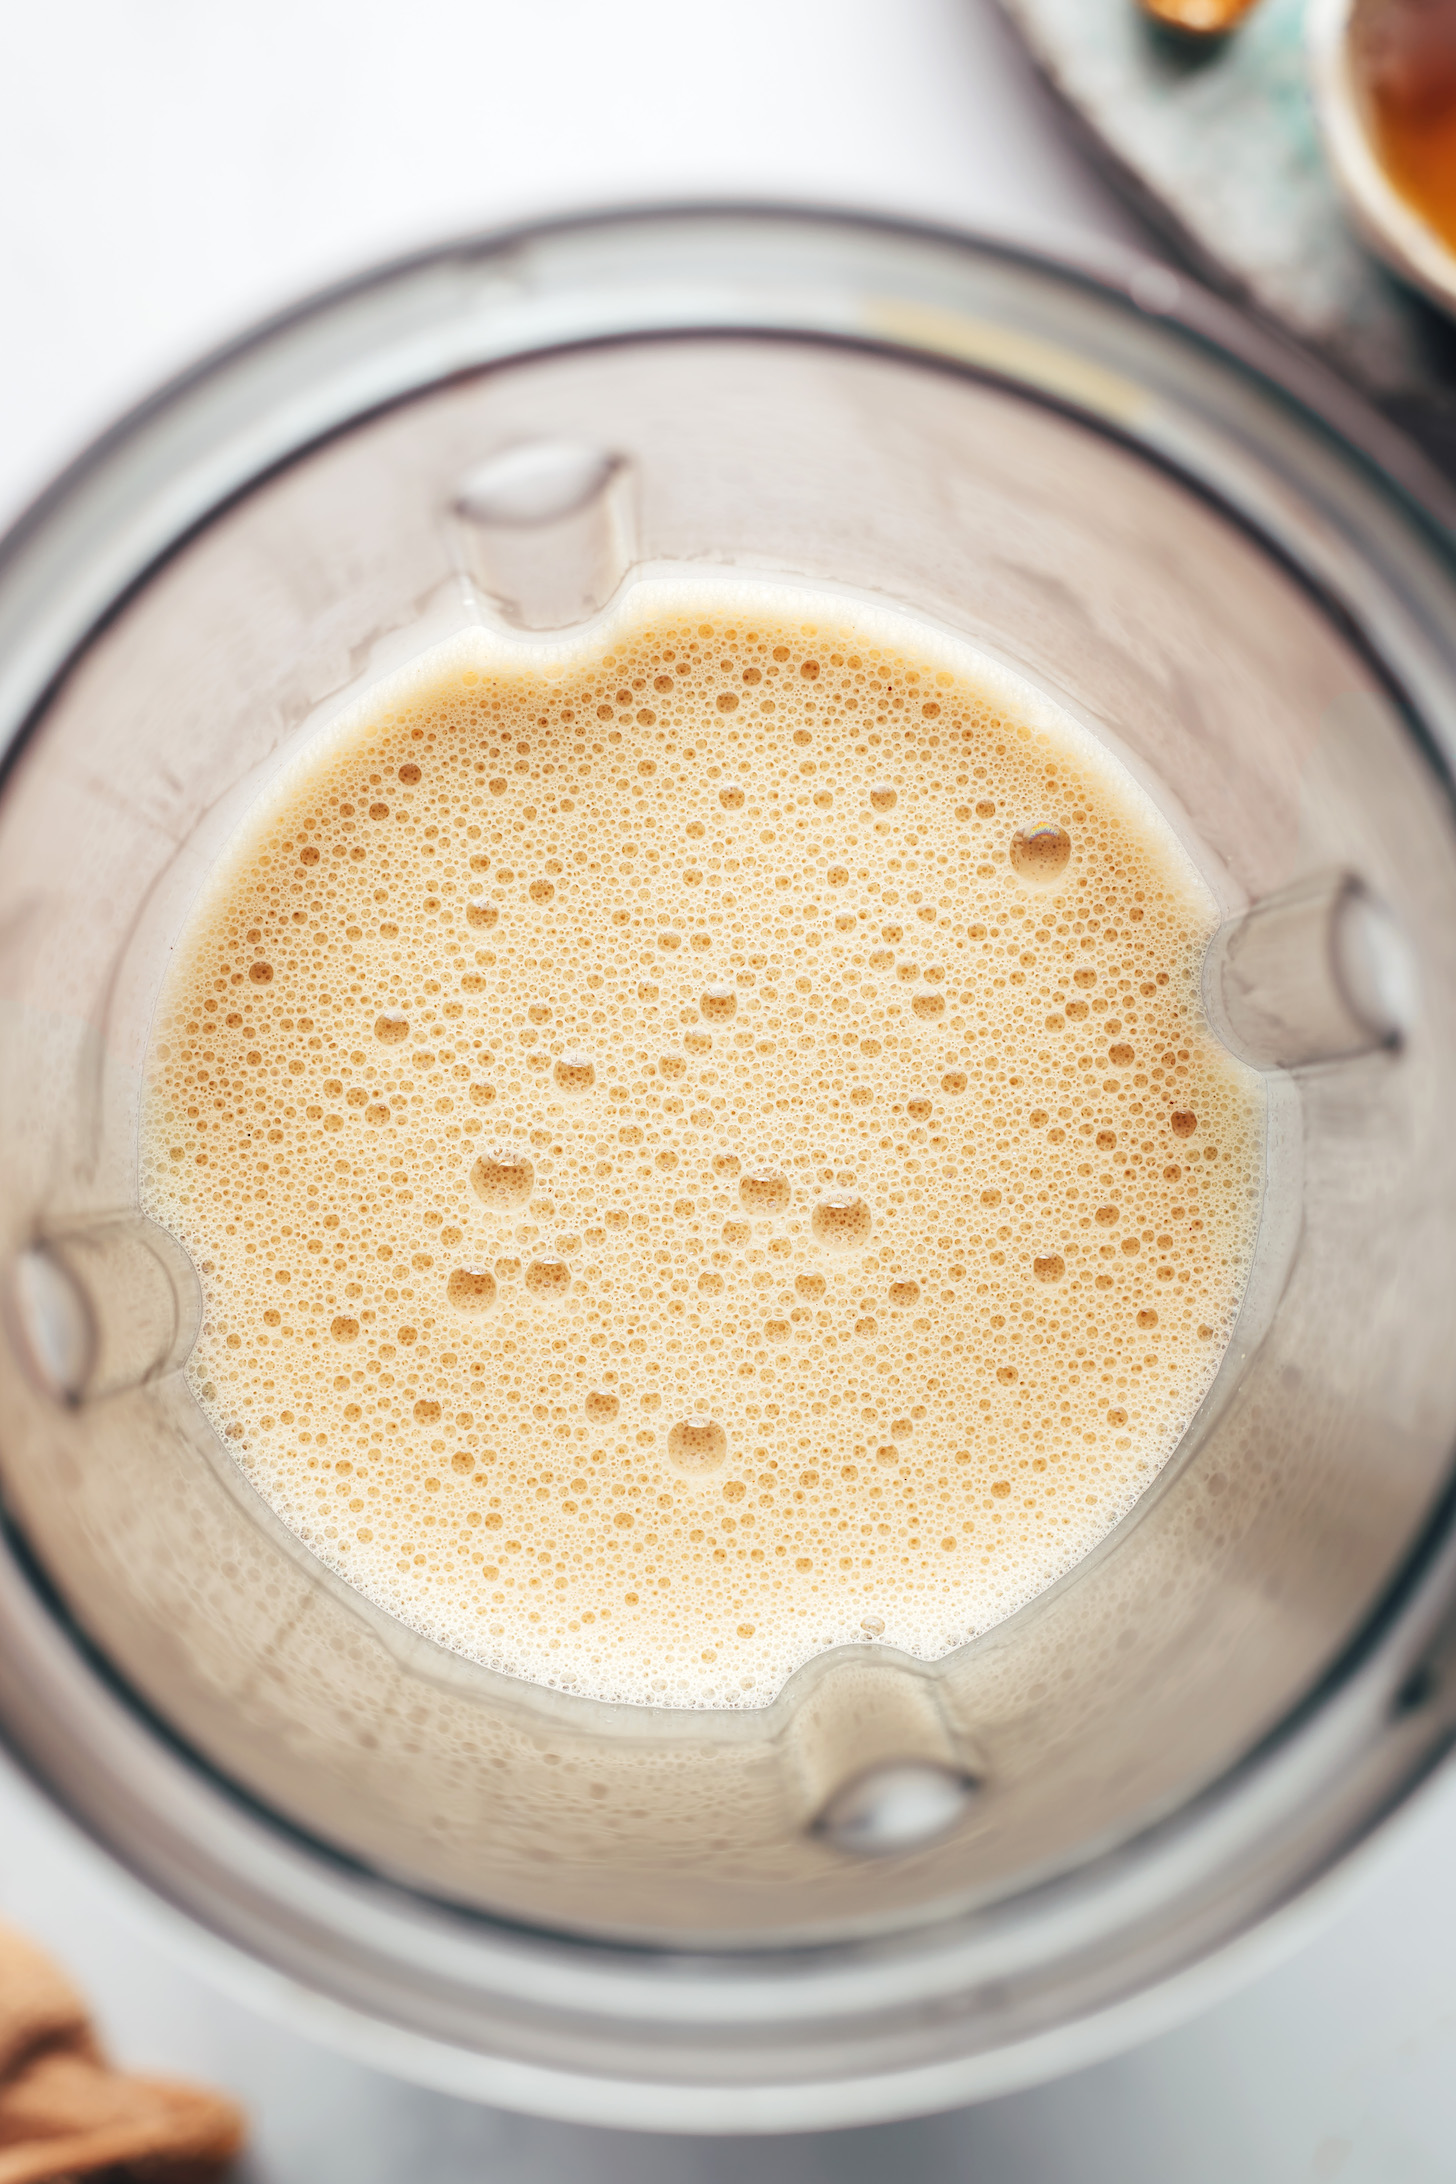 Frothy latte in a blender